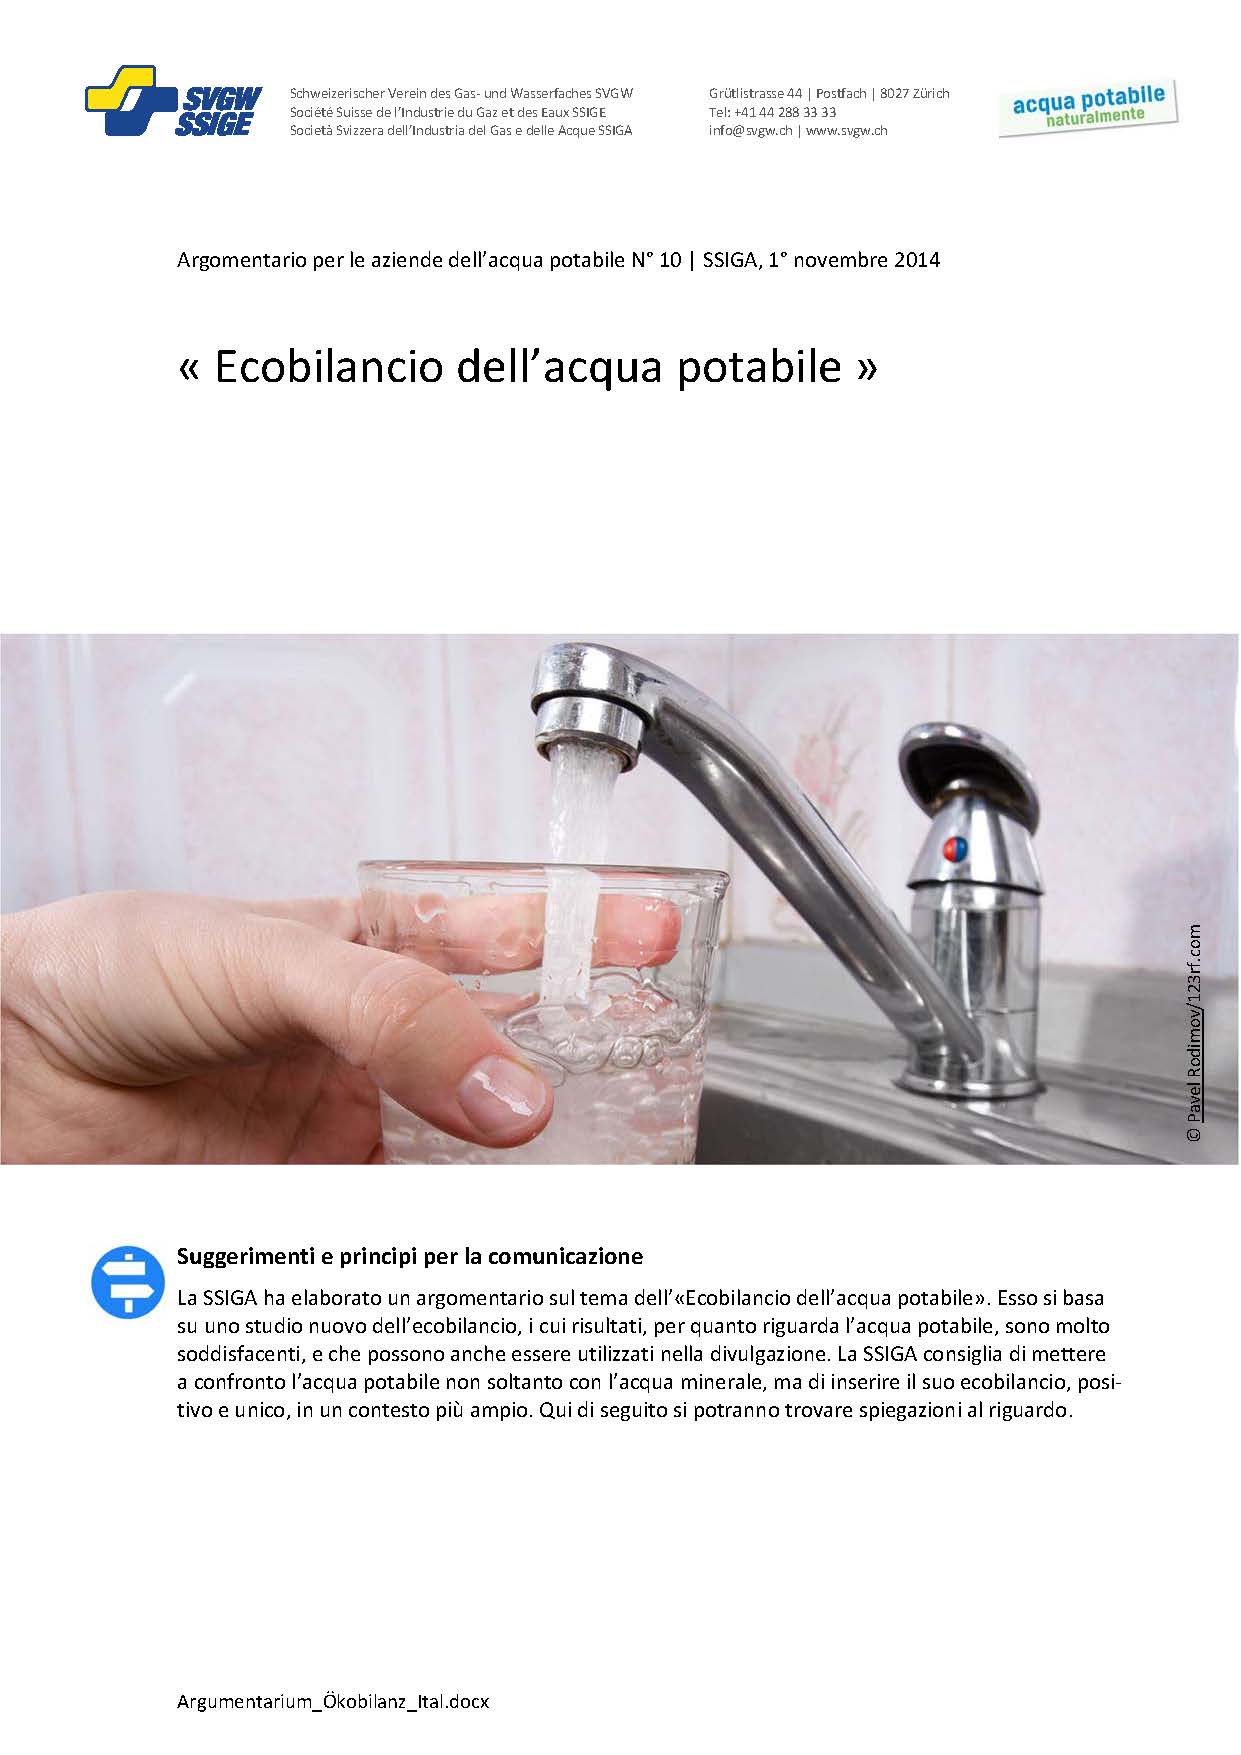 Argomentazione: «Ecobilancio dell'acqua potabile»